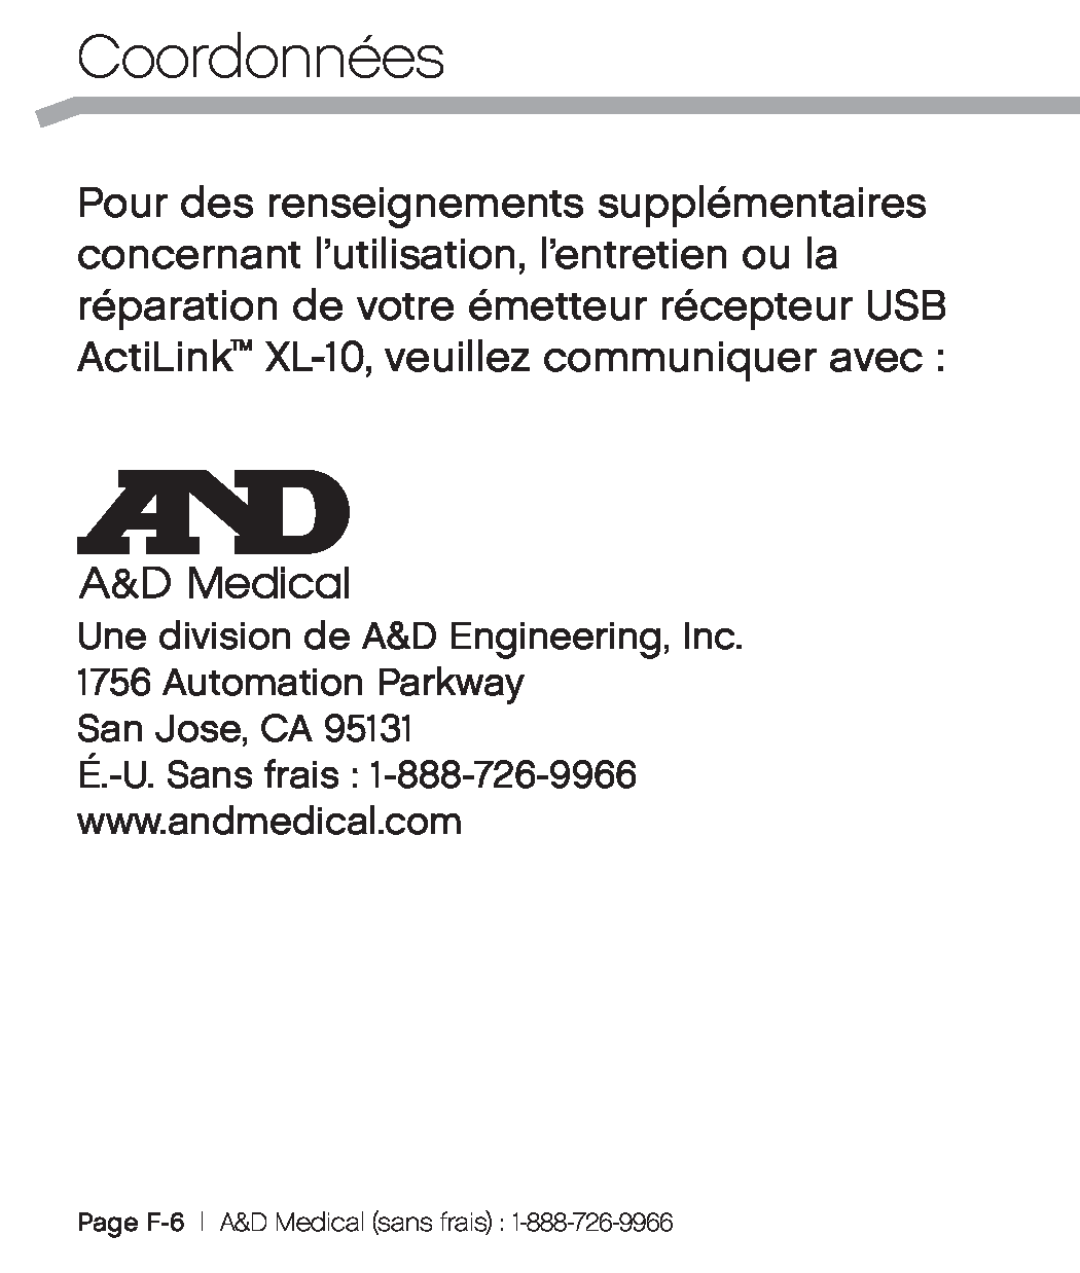 A&D XL-10 user manual Coordonnées, Une division de A&D Engineering, Inc. 1756 Automation Parkway, San Jose, CA 